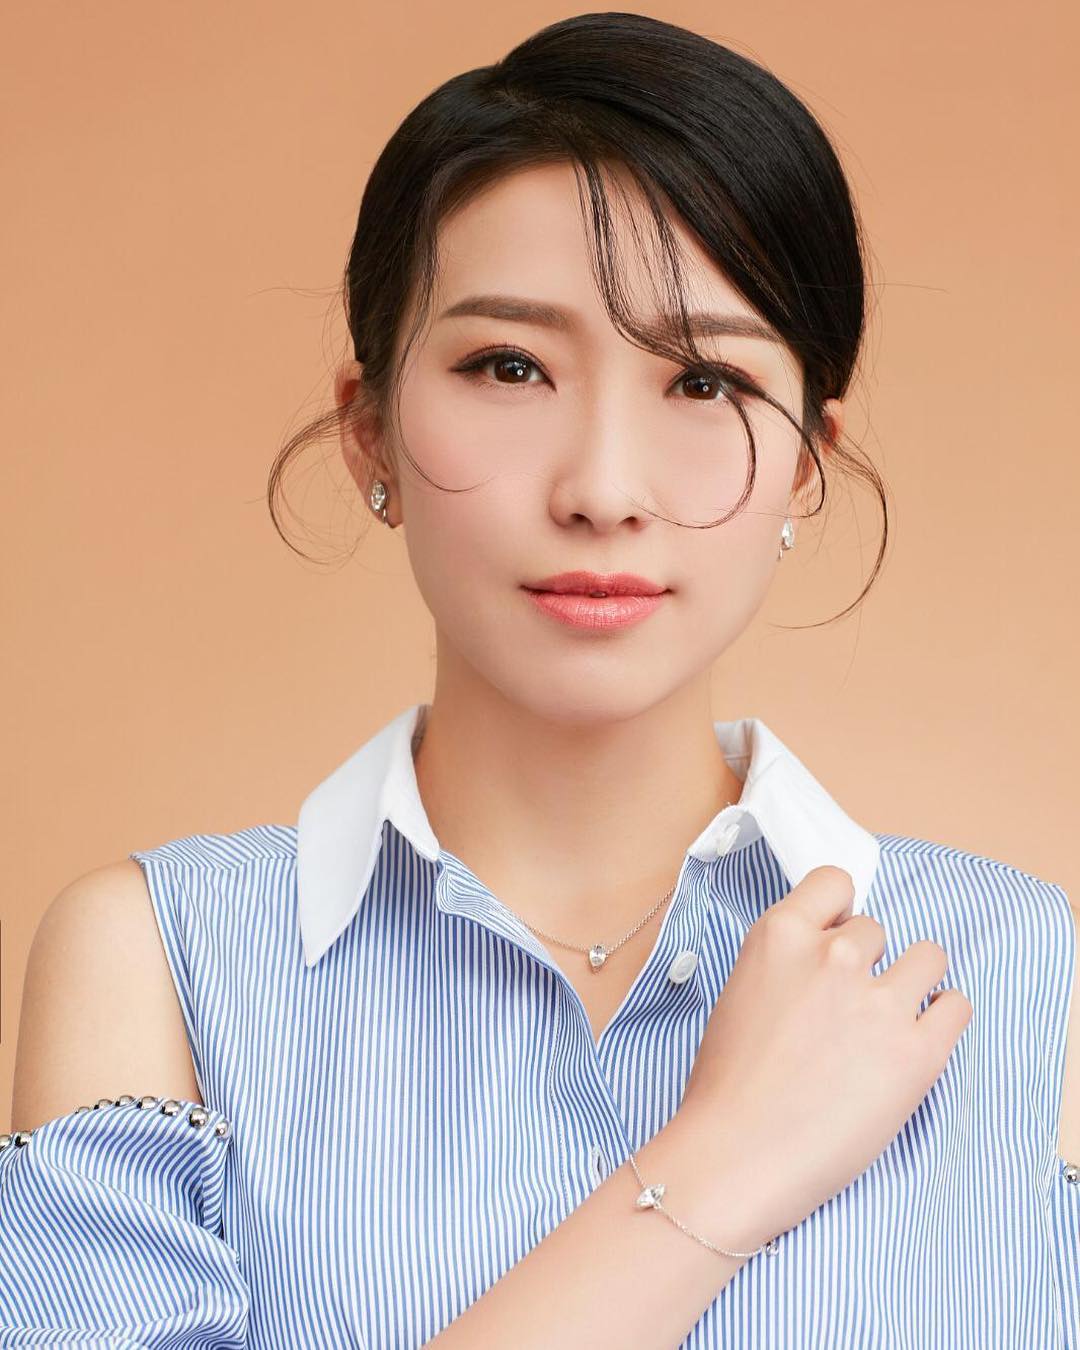 Diêu Tử Linh là một hoa đán có thực lực trong đài TVB. Ảnh: Instagram NV